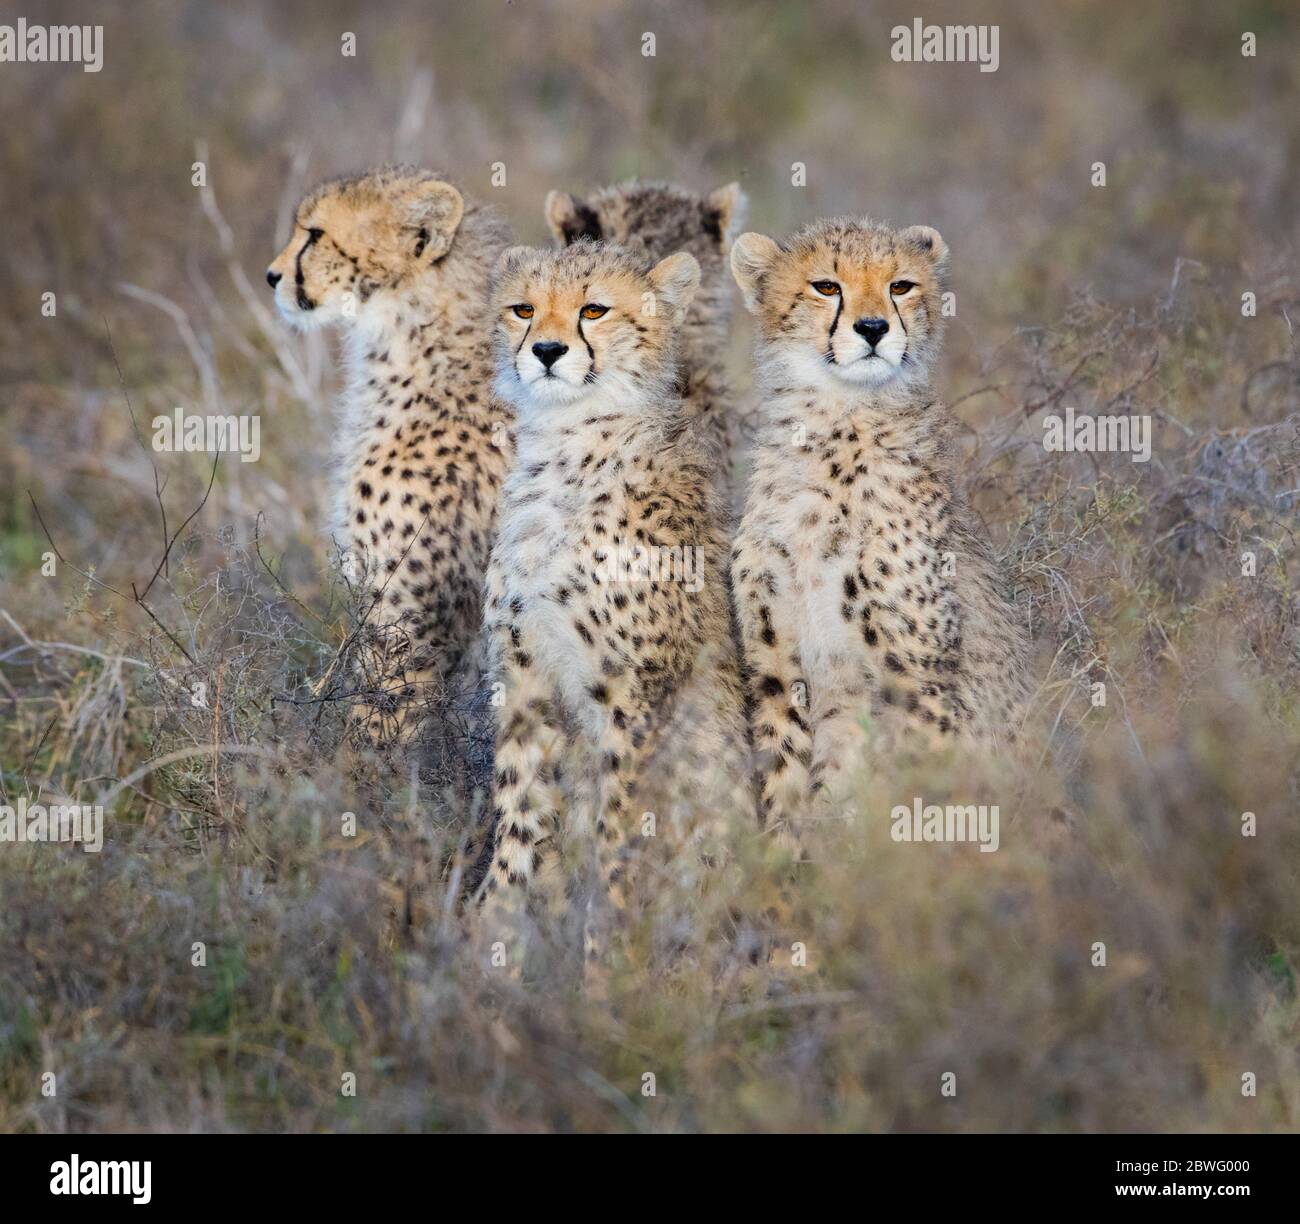 Groupe de quatre cheetahs (Acinonyx jubatus) assis ensemble, zone de conservation de Ngorongoro, Tanzanie, Afrique Banque D'Images